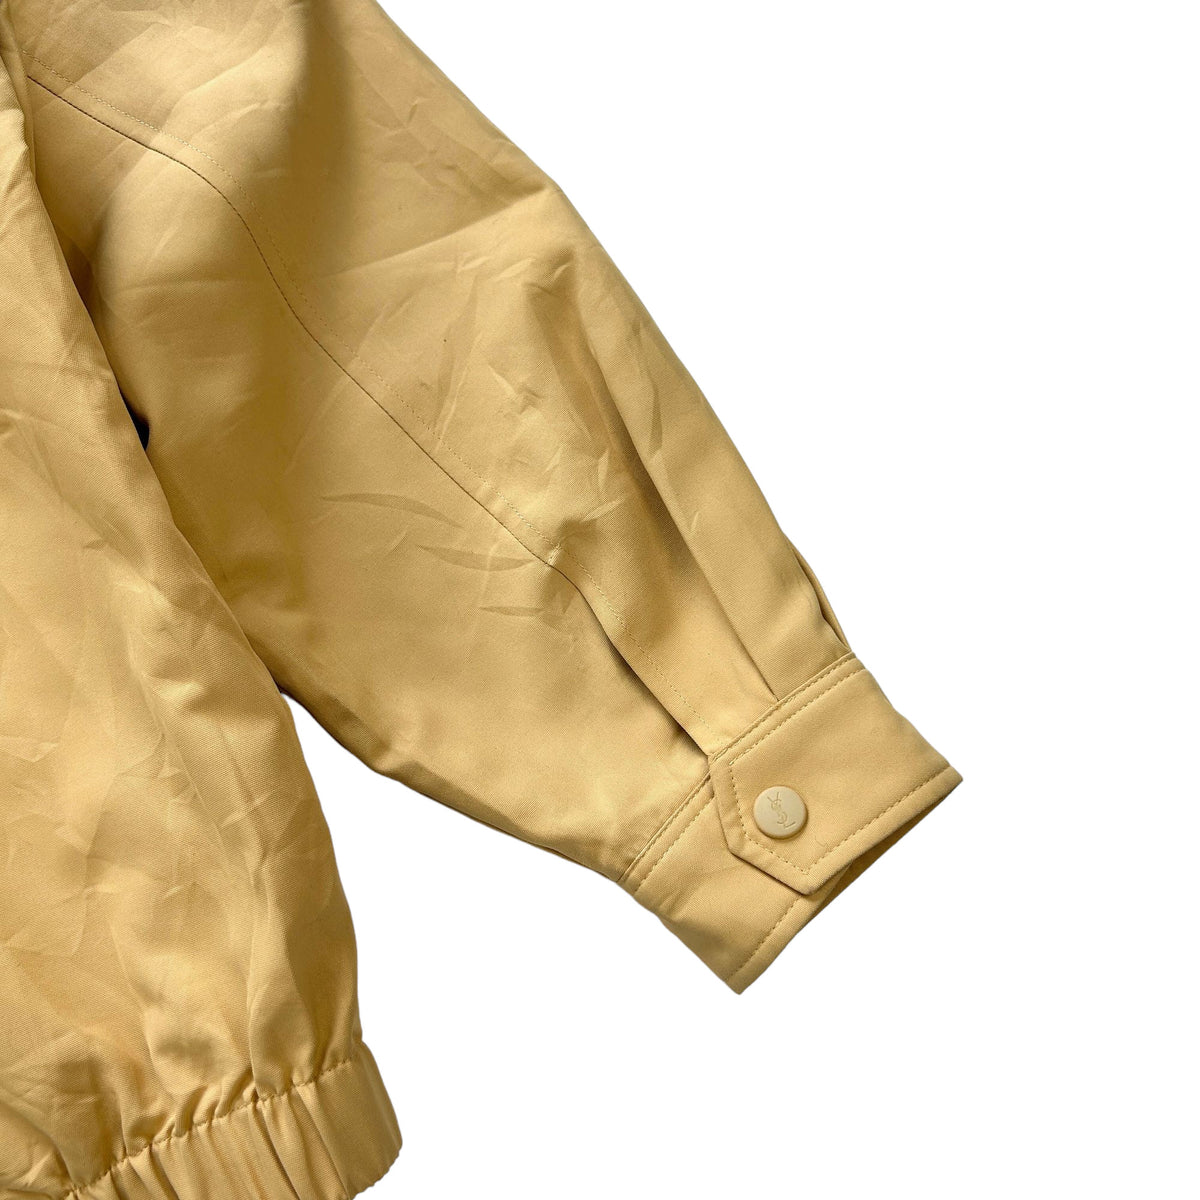 Vintage Yves Saint Laurent Jacket Size L